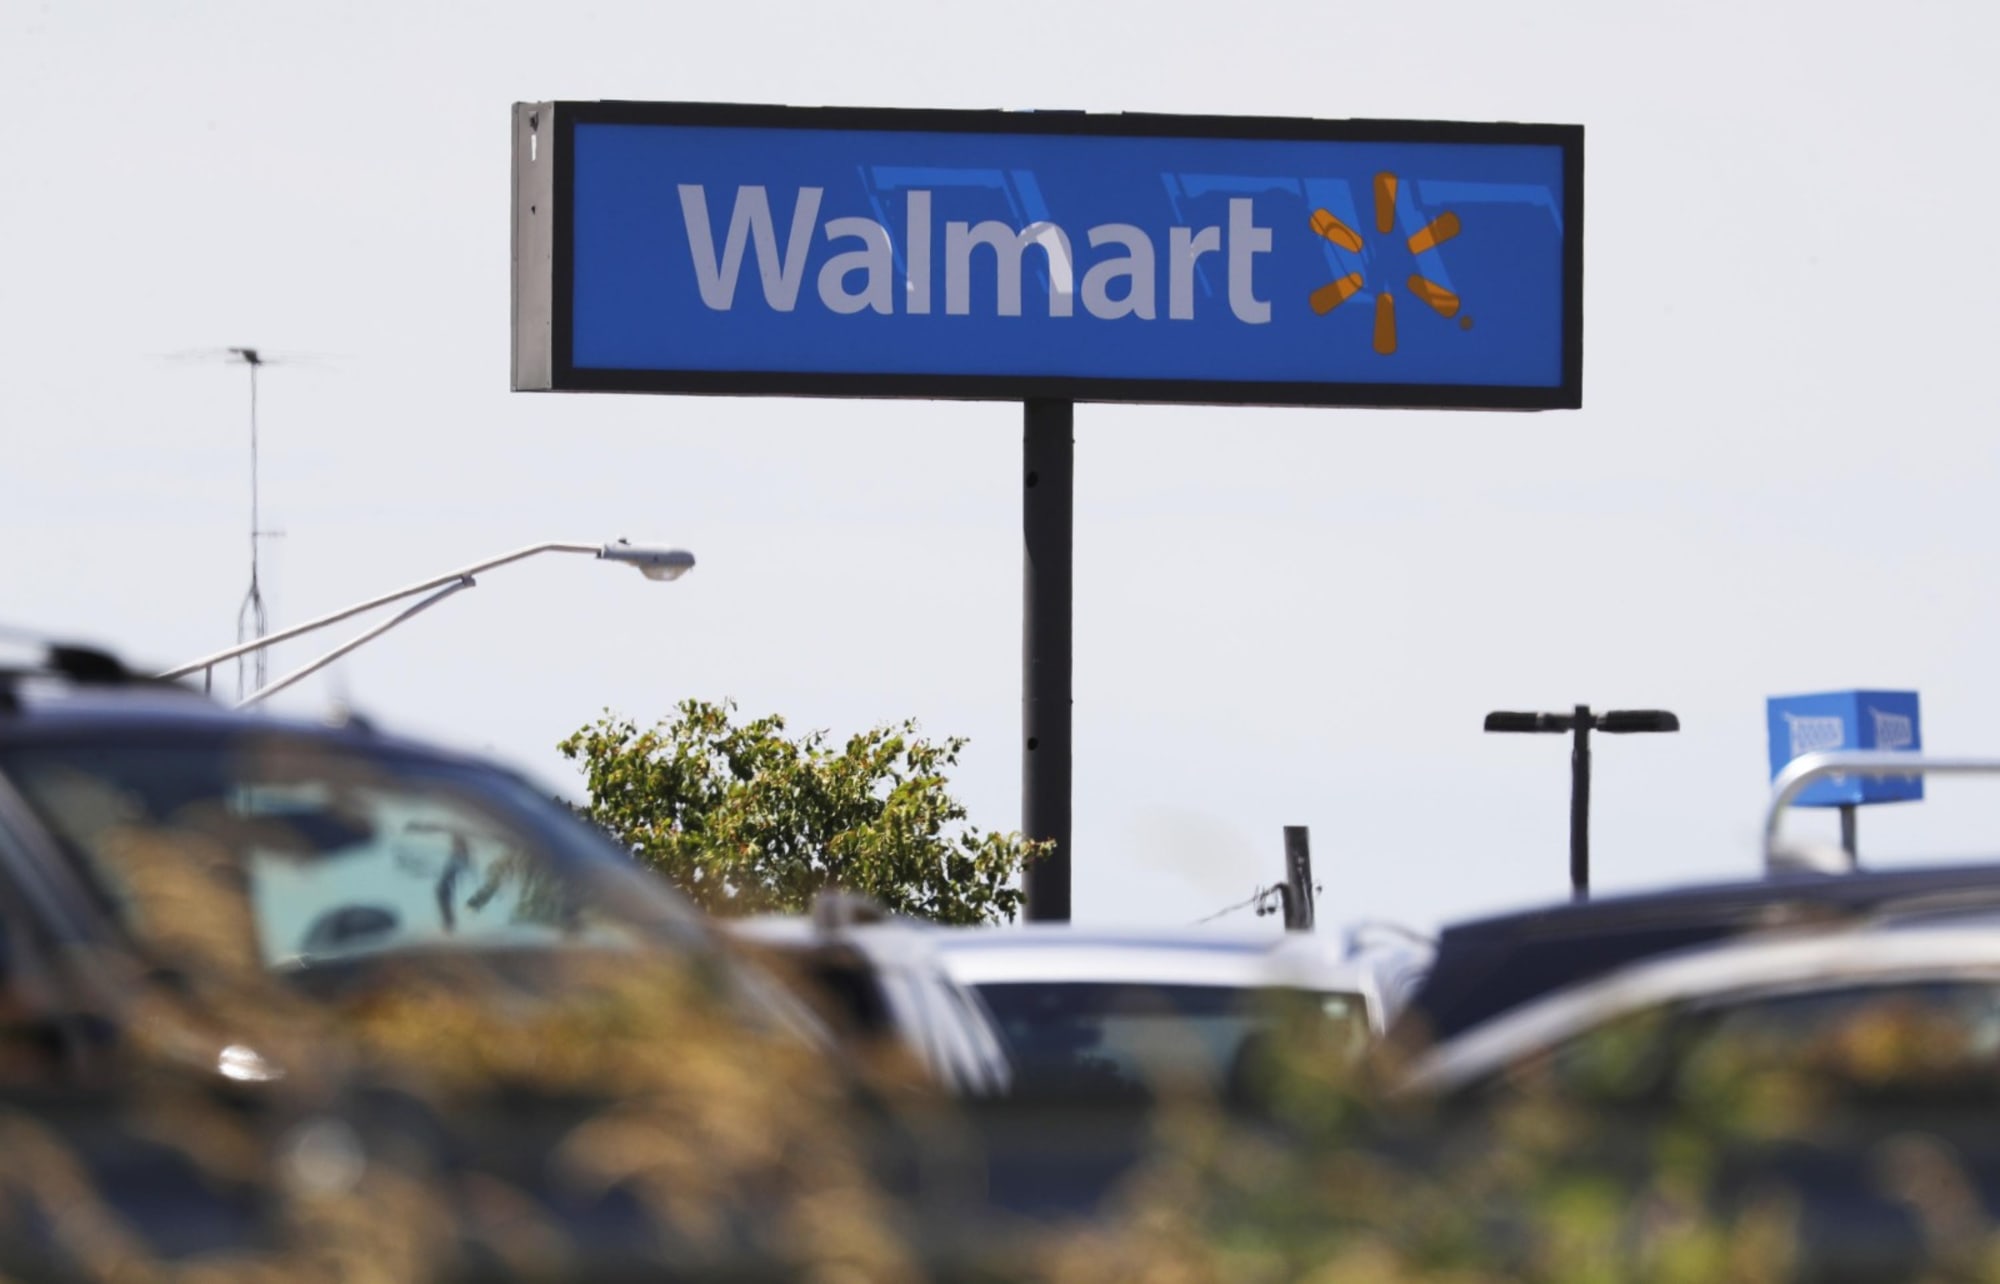 Walmart Labor Day hours: Is Walmart open on ... - FanSided